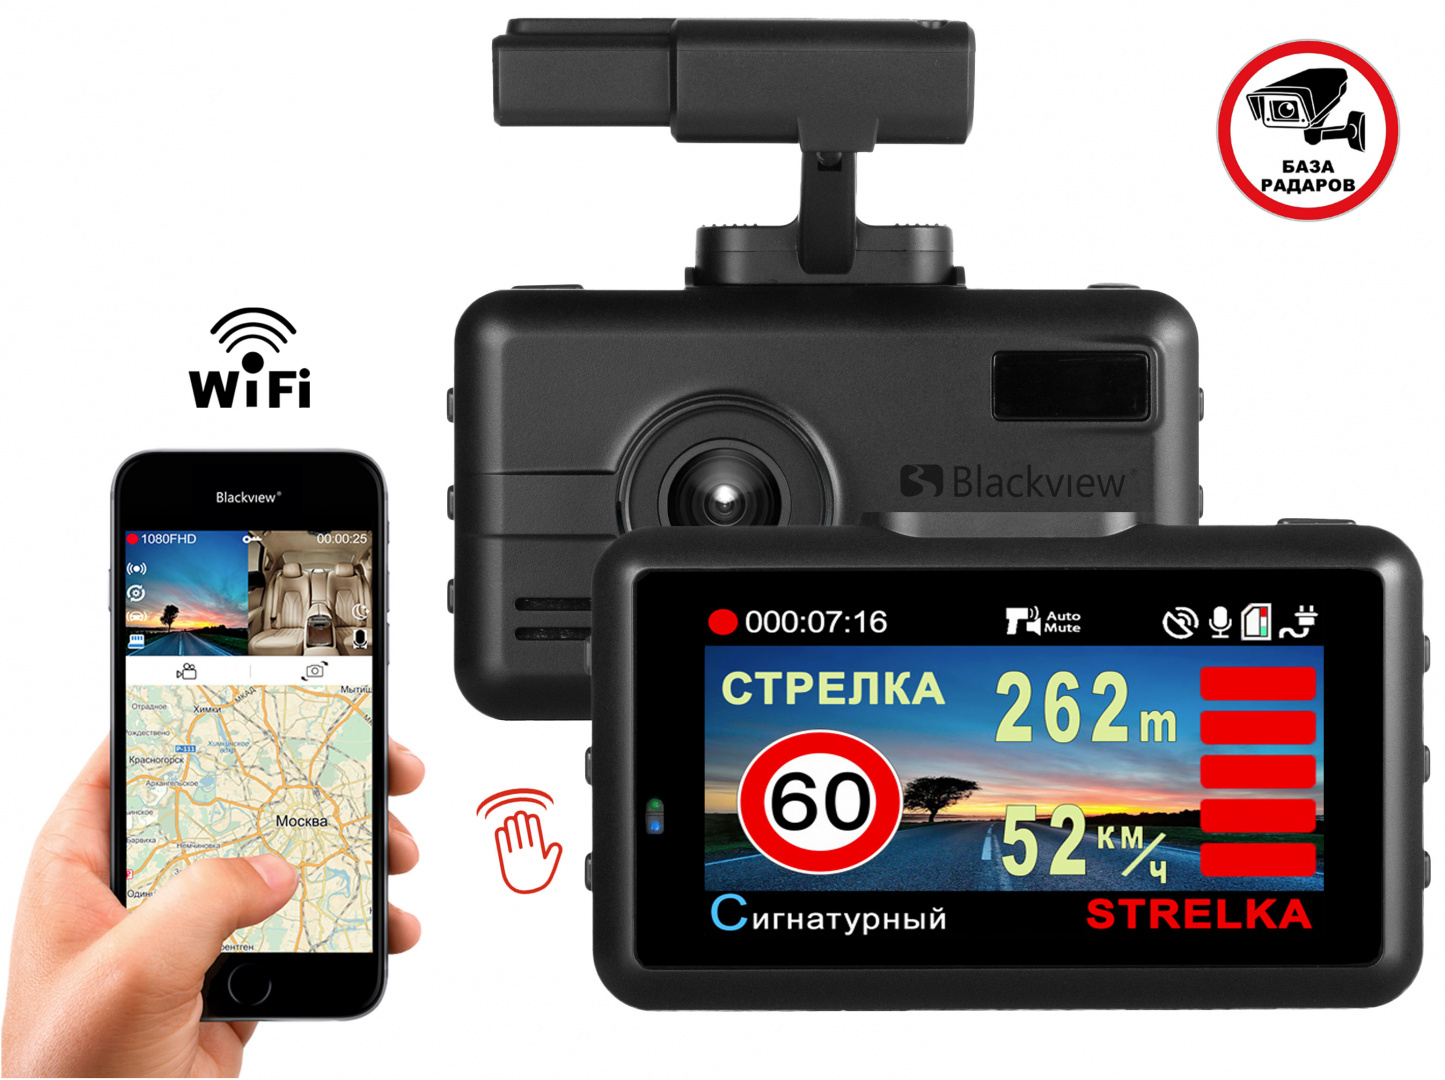 Blackview X GPS/Глонасс - регистратор и сигнатурный радар-детектор